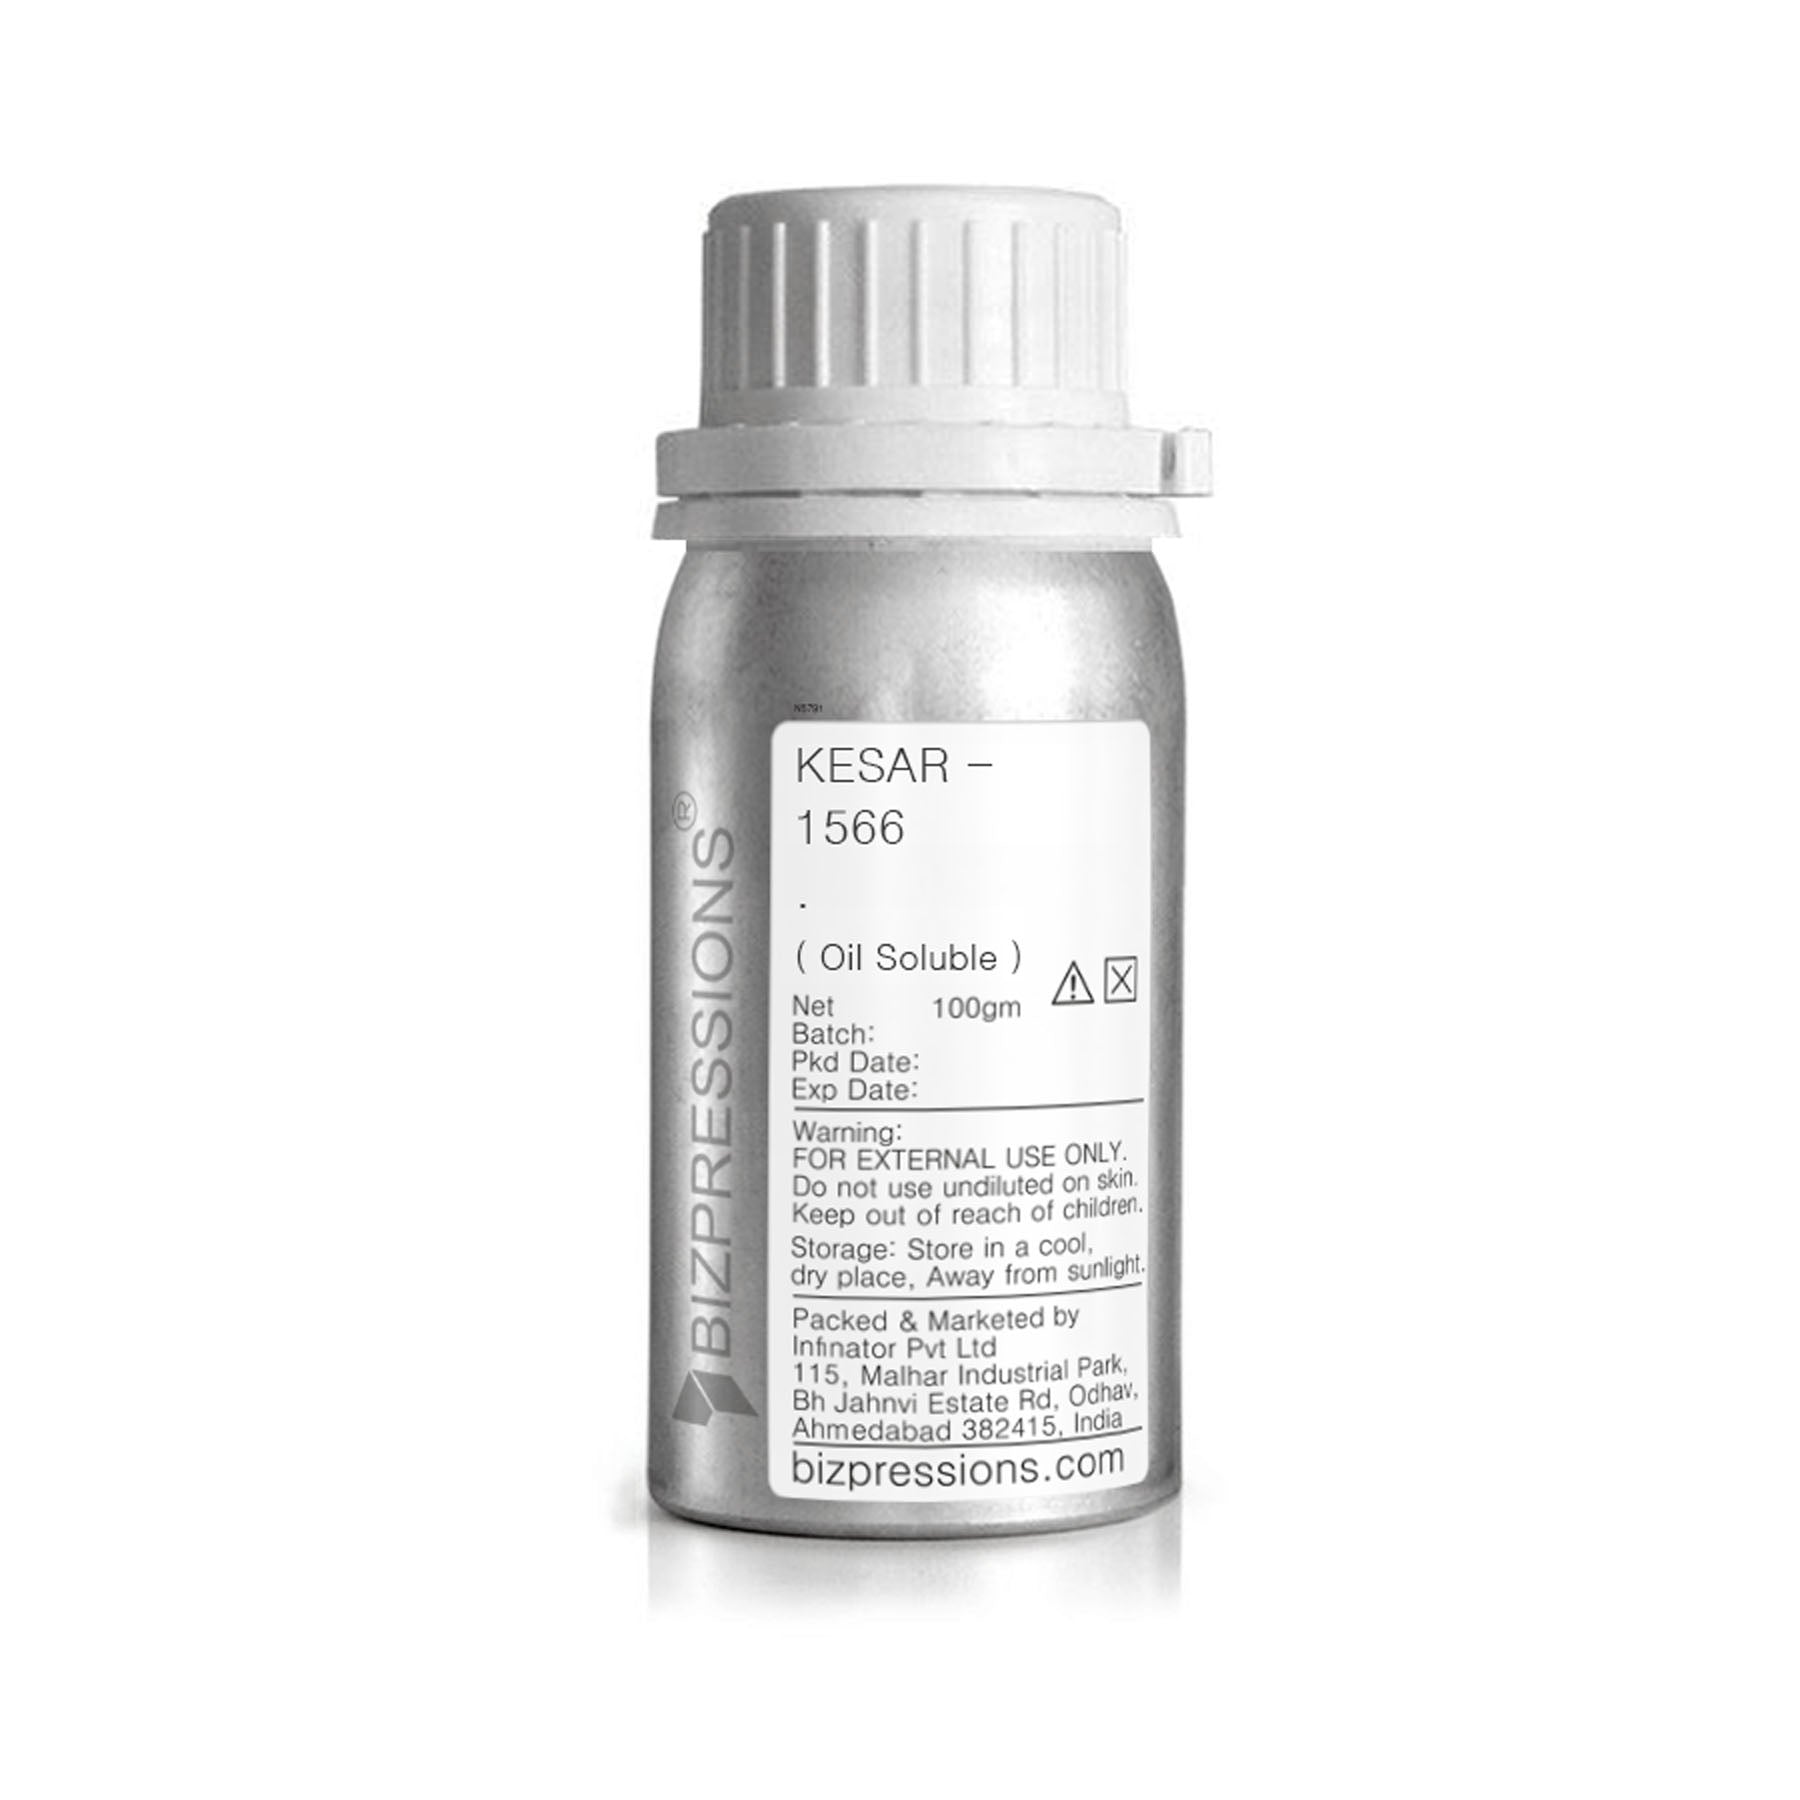 KESAR - 1566 - Fragrance ( Oil Soluble ) - 100 gm